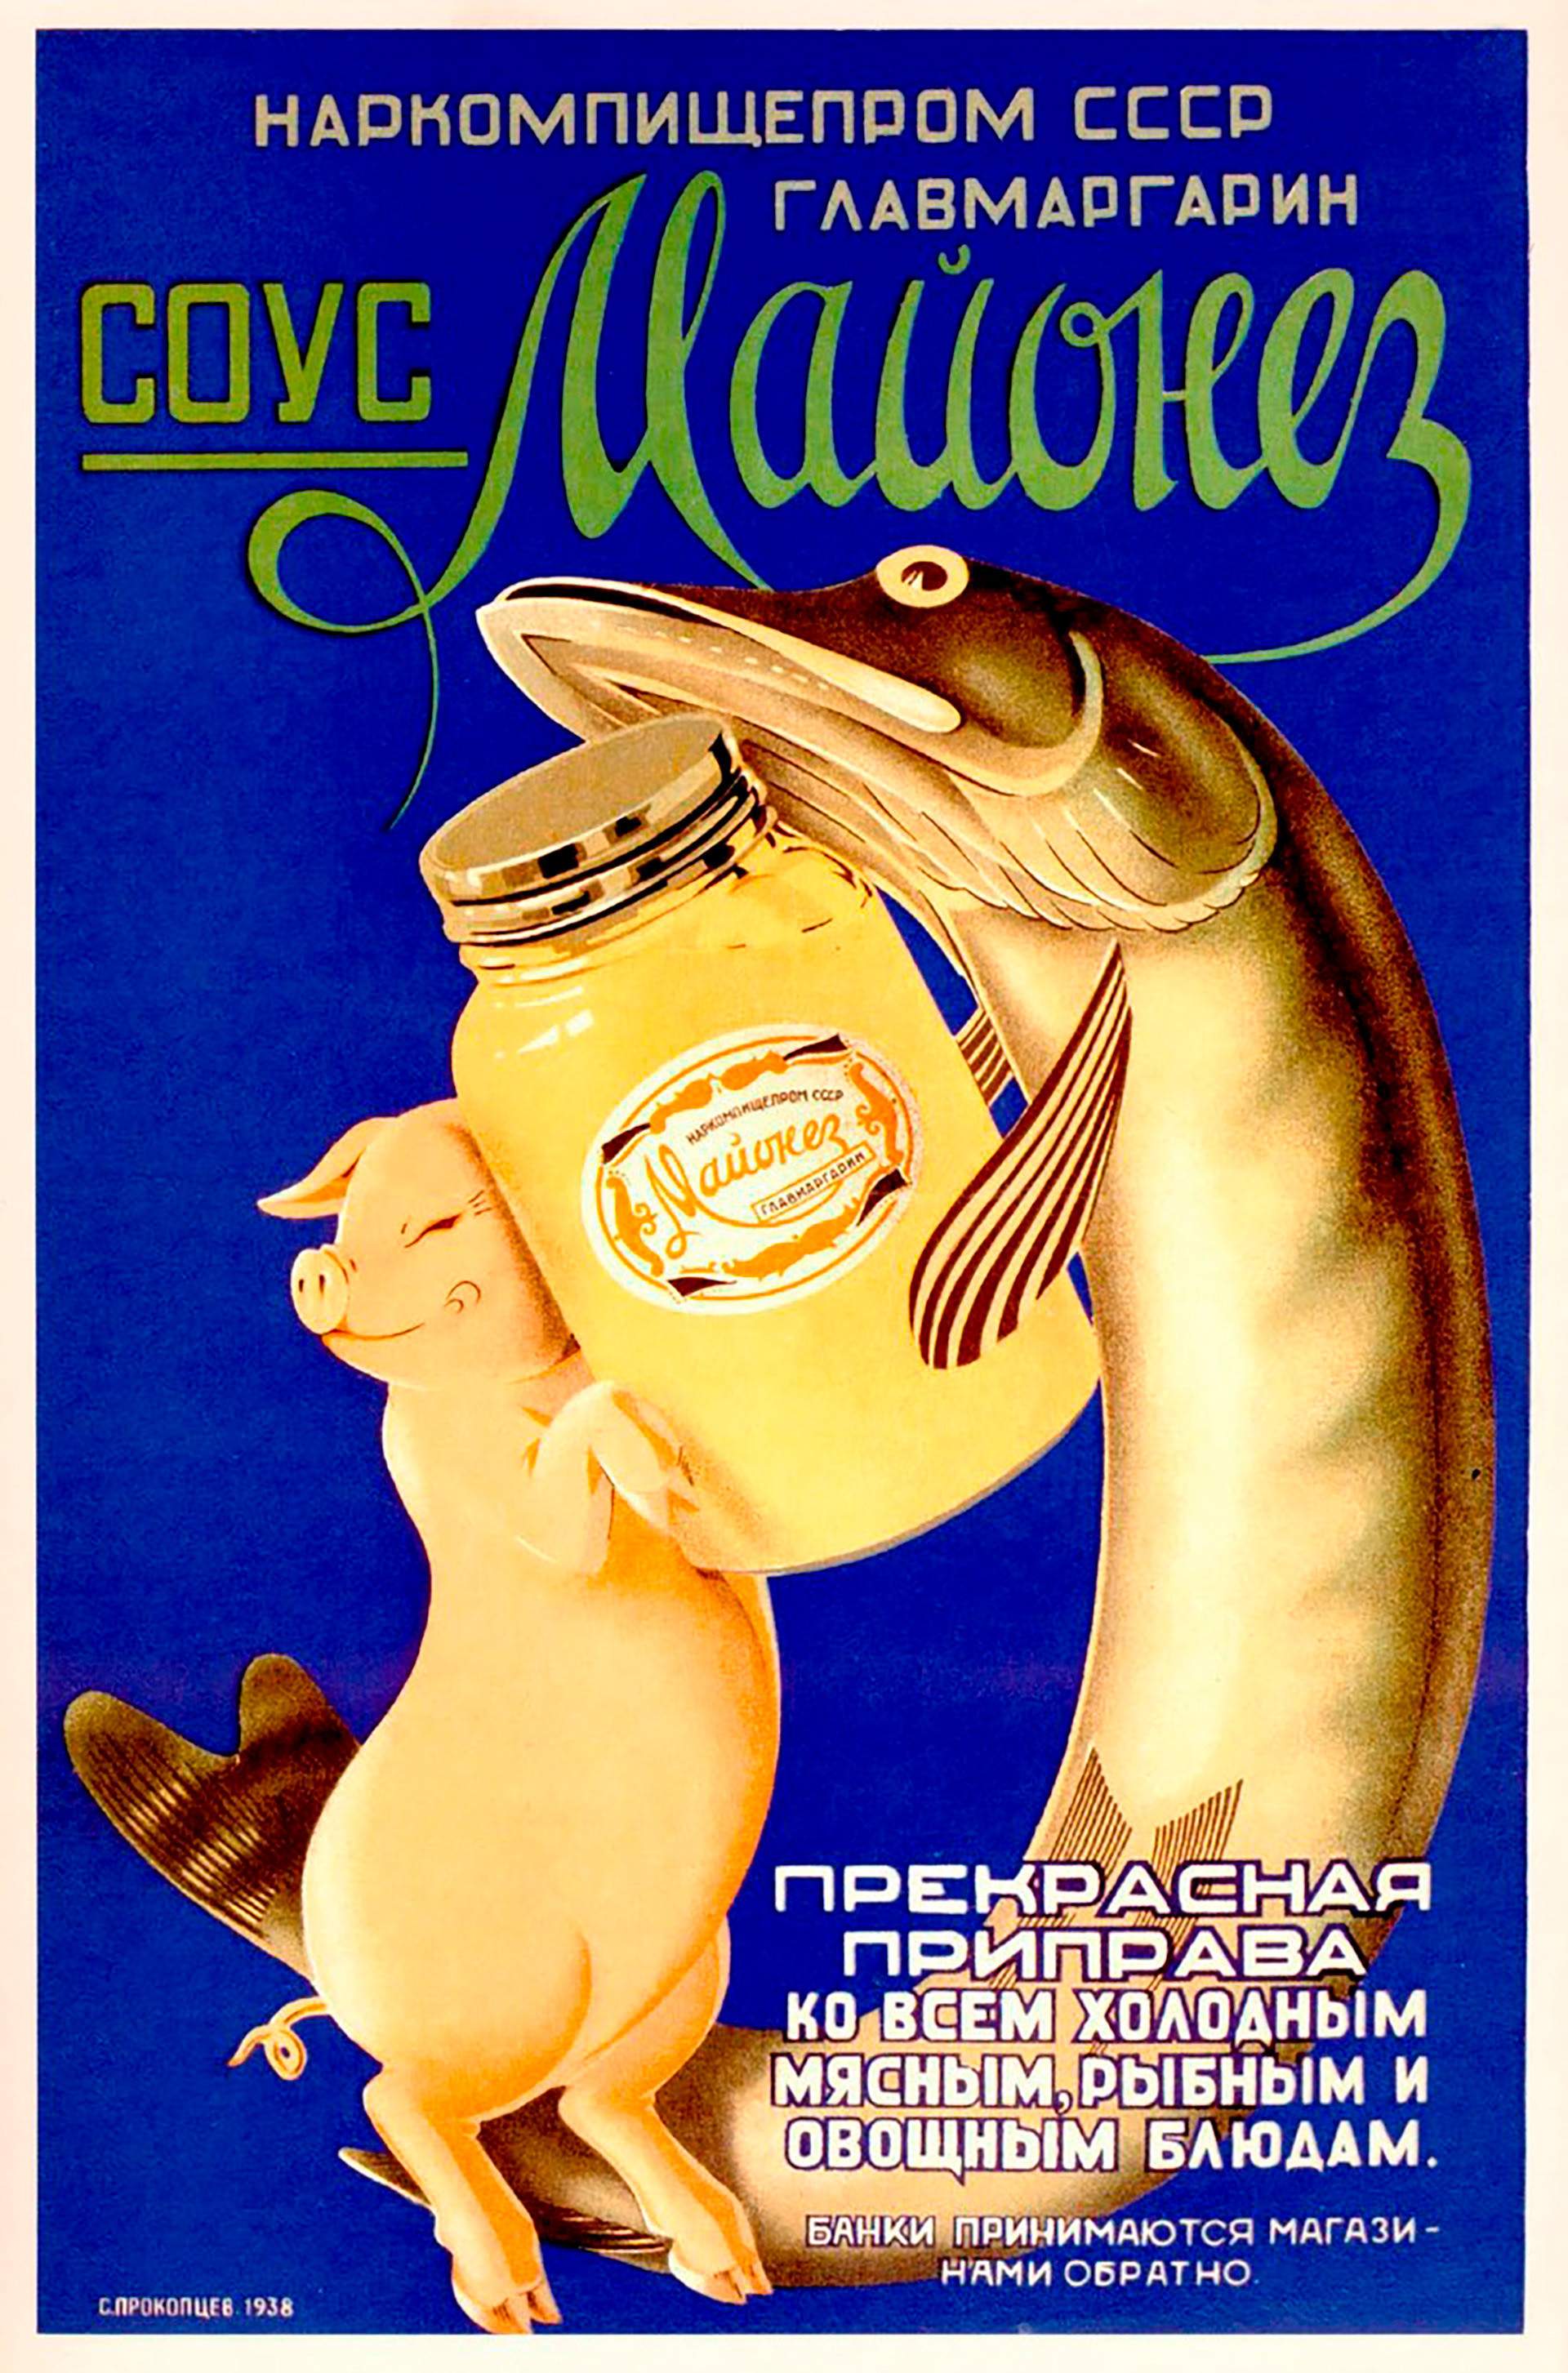 Publicité soviétique pour de la mayonnaise